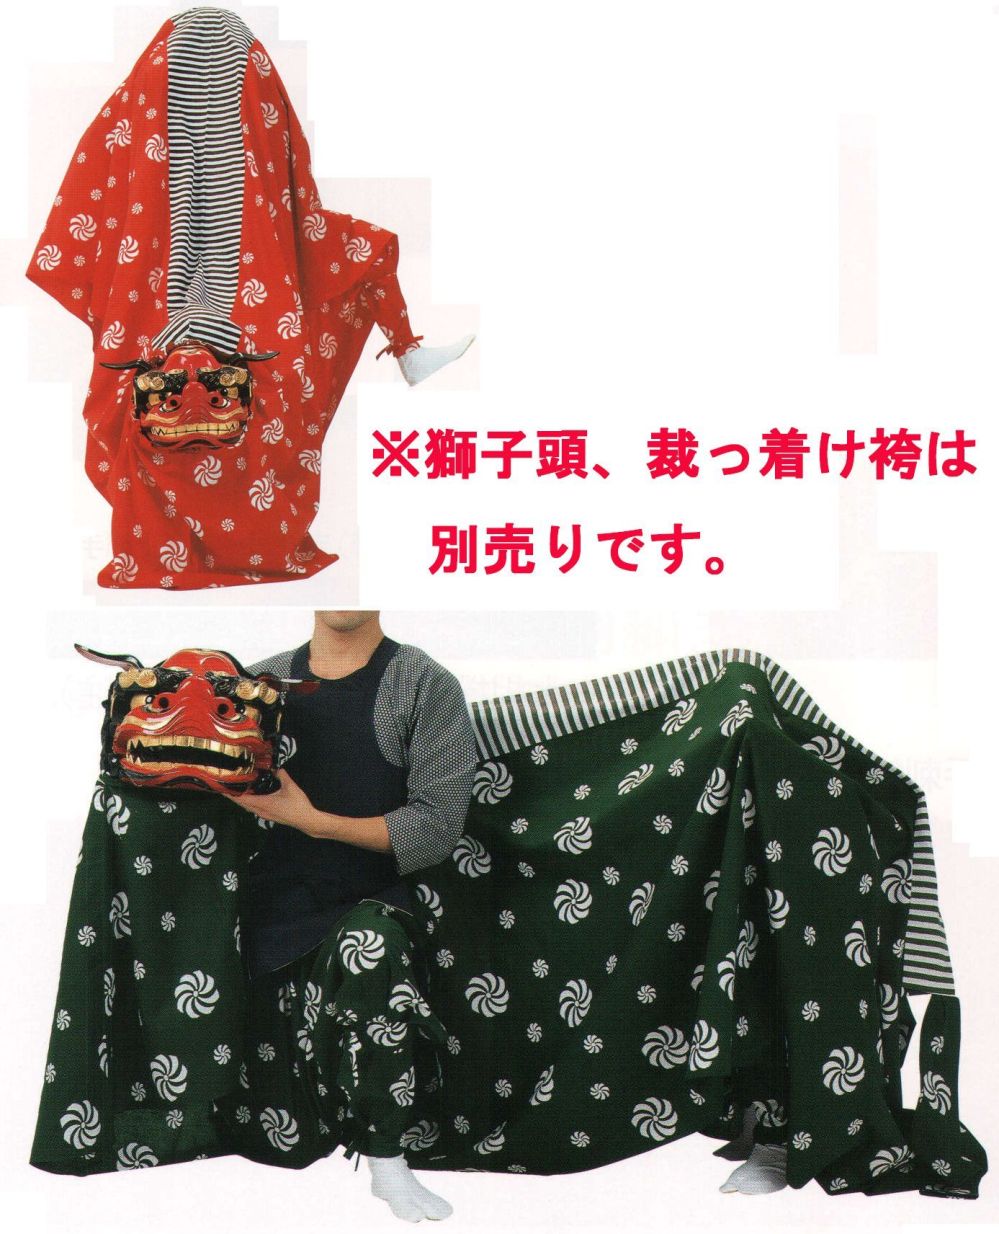 祭り用品jp 獅子舞衣装 平井旗 24-02 祭り用品の専門店